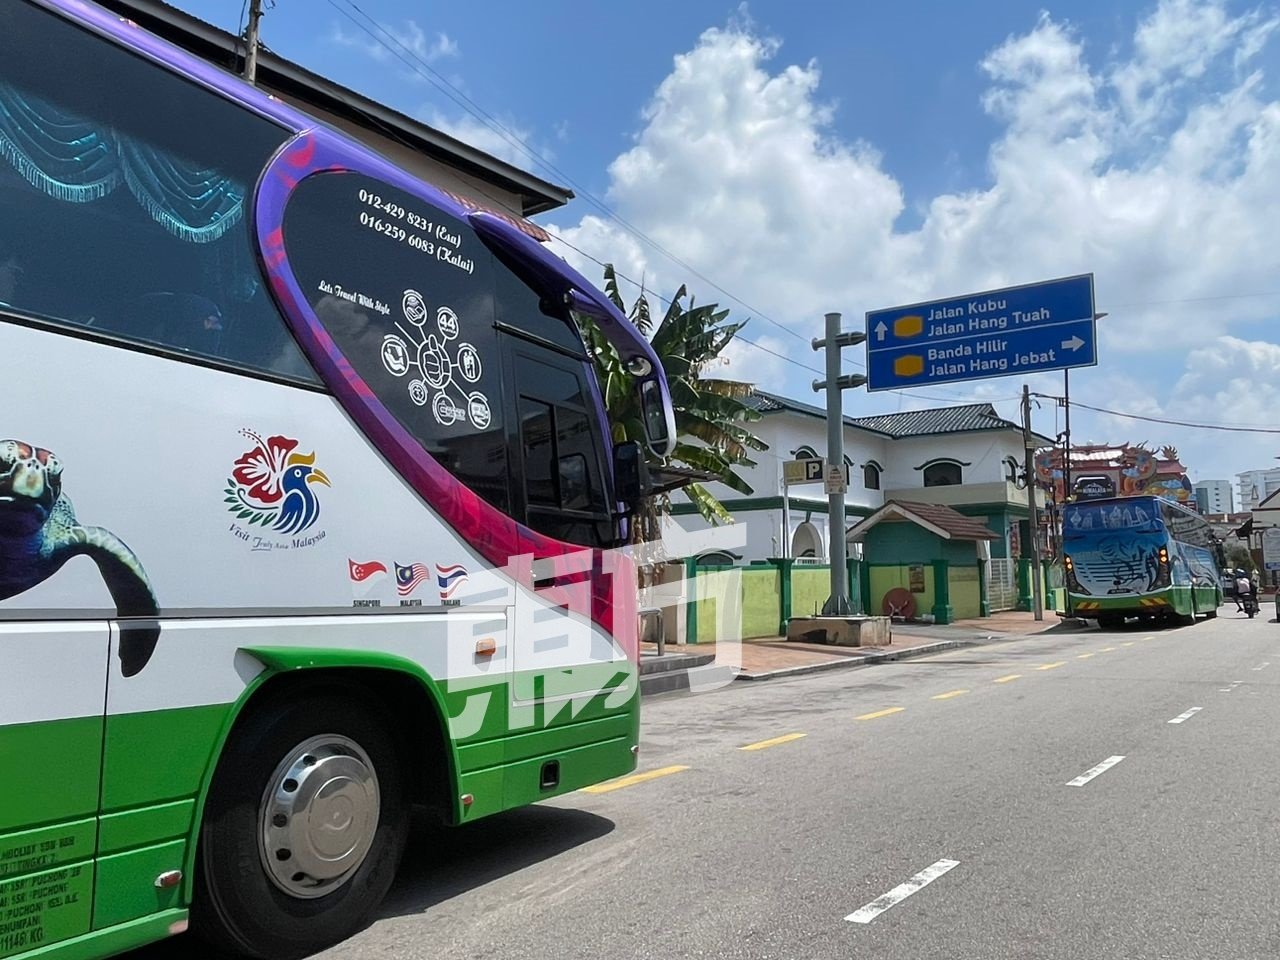 马六甲老街区经常有巴士载著外地游客到来观光。